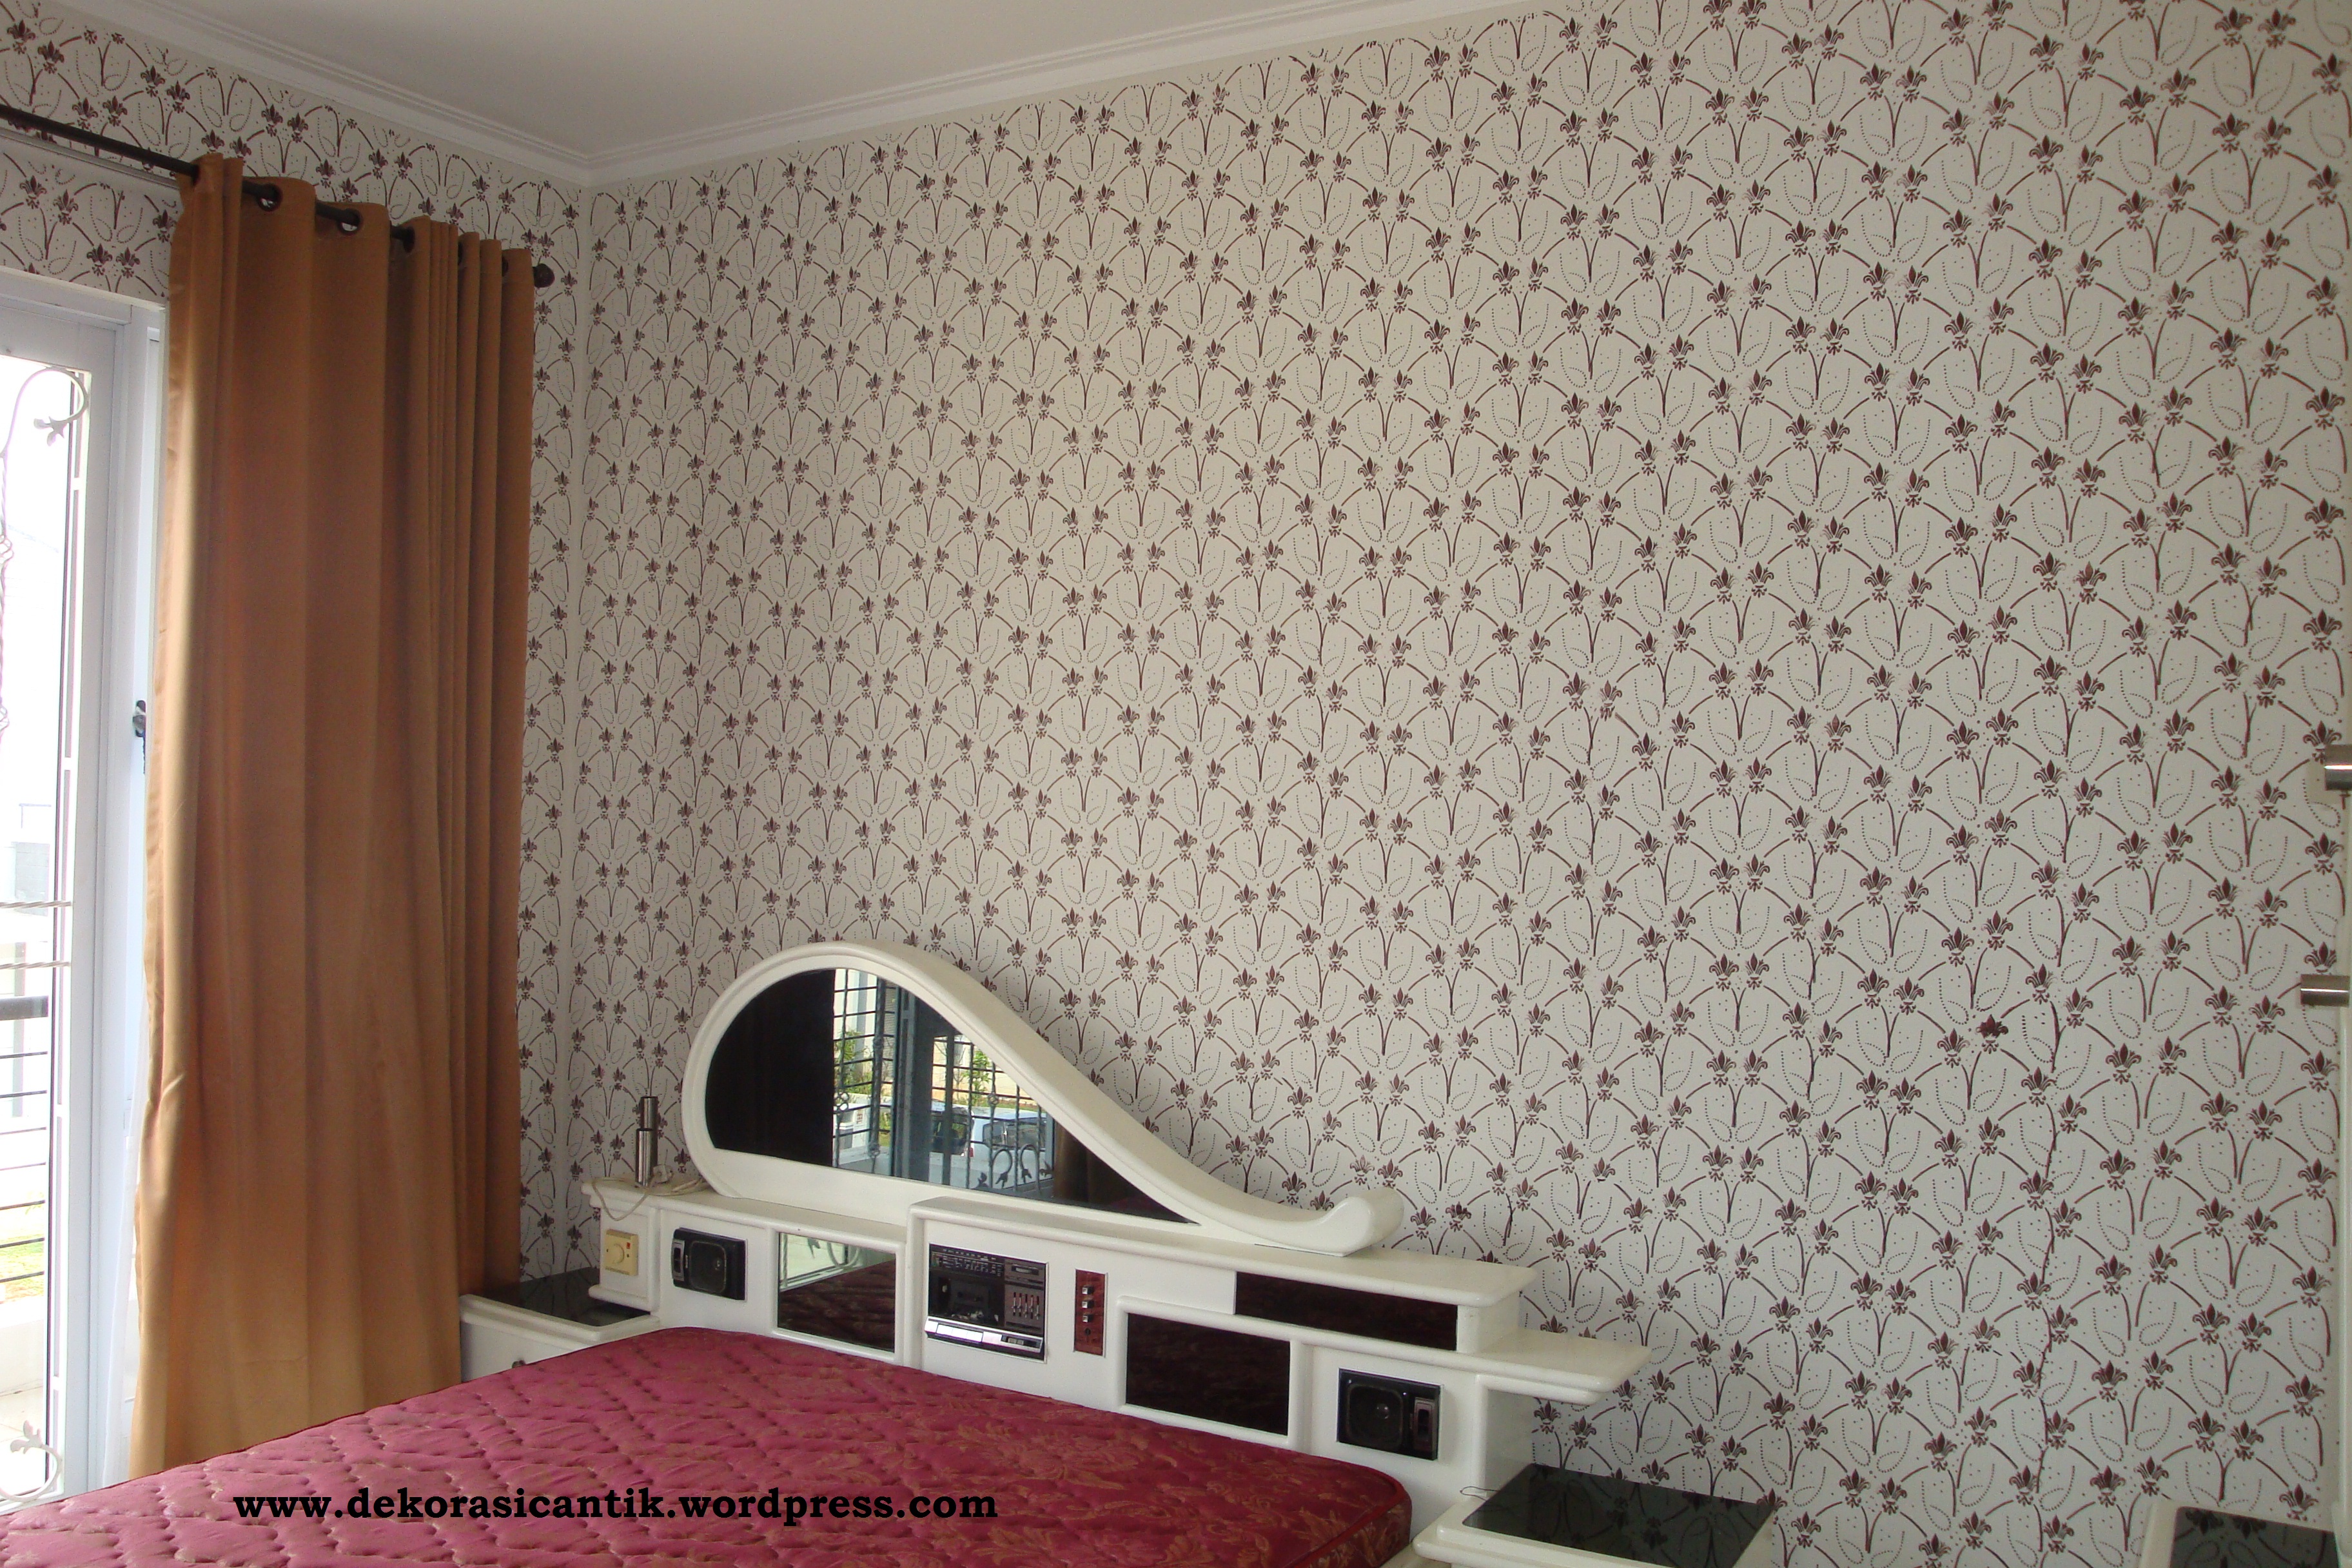 Dekorasi Kamar Tidur Dekorasi Cantik Wall Printing Wallpaper